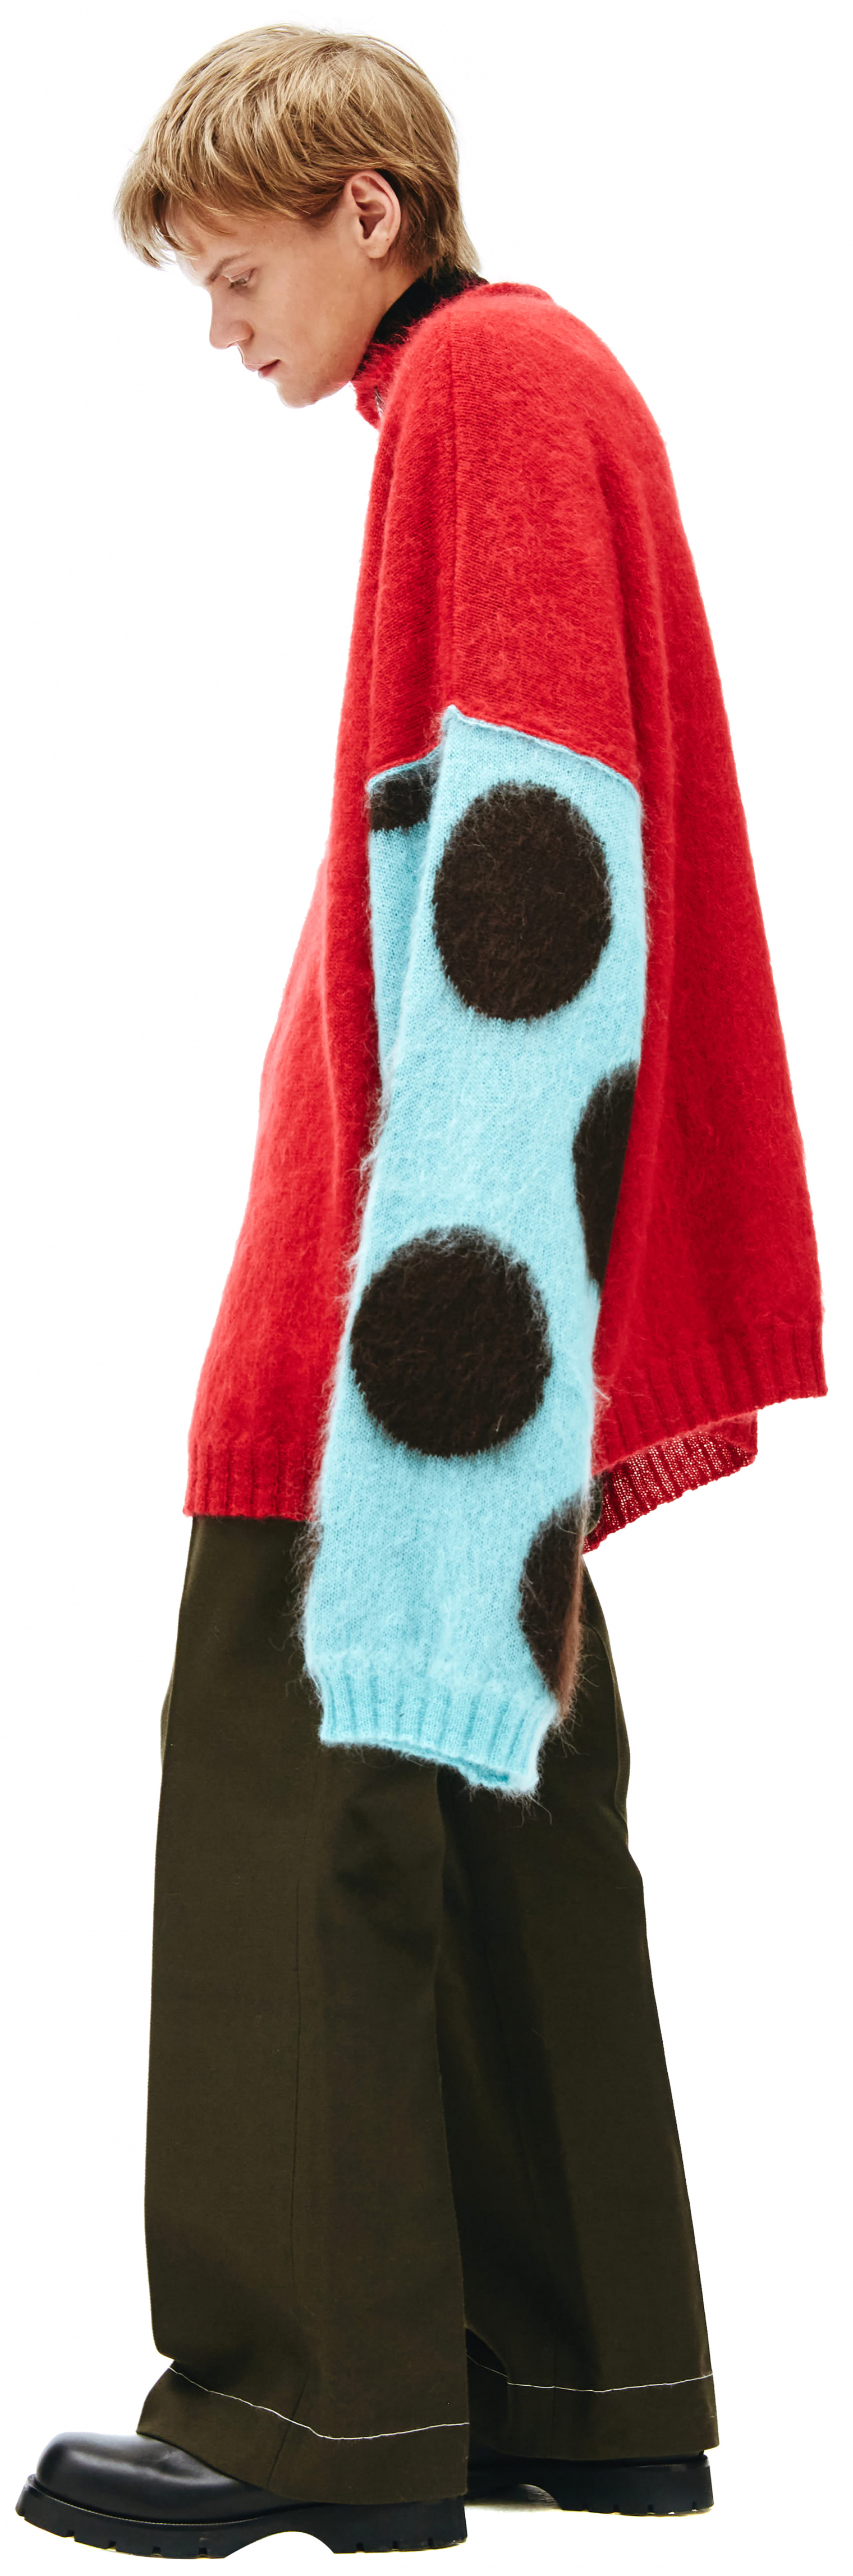 Raf Simons Красный Оверсайз свитер с контрастной вышивкой